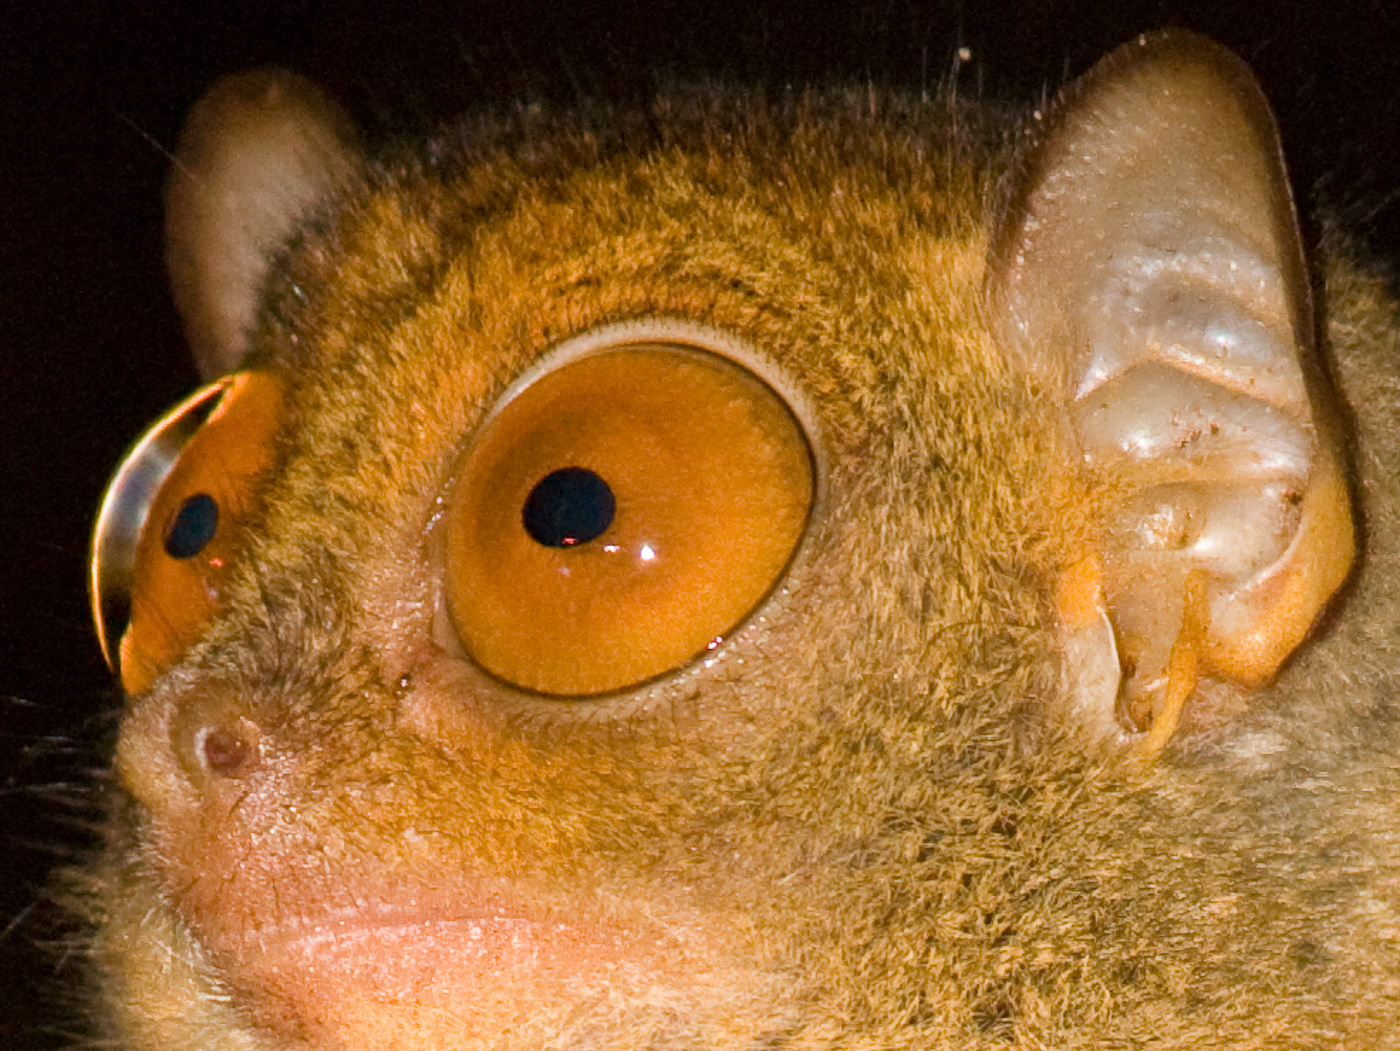 Le tarsier est un animal nocturne. Il a donc des yeux adaptés à la vision de nuit. Ils sont particulièrement grands. © Erwin Bolwidt, Flickr, CC by-nc-sa 2.0